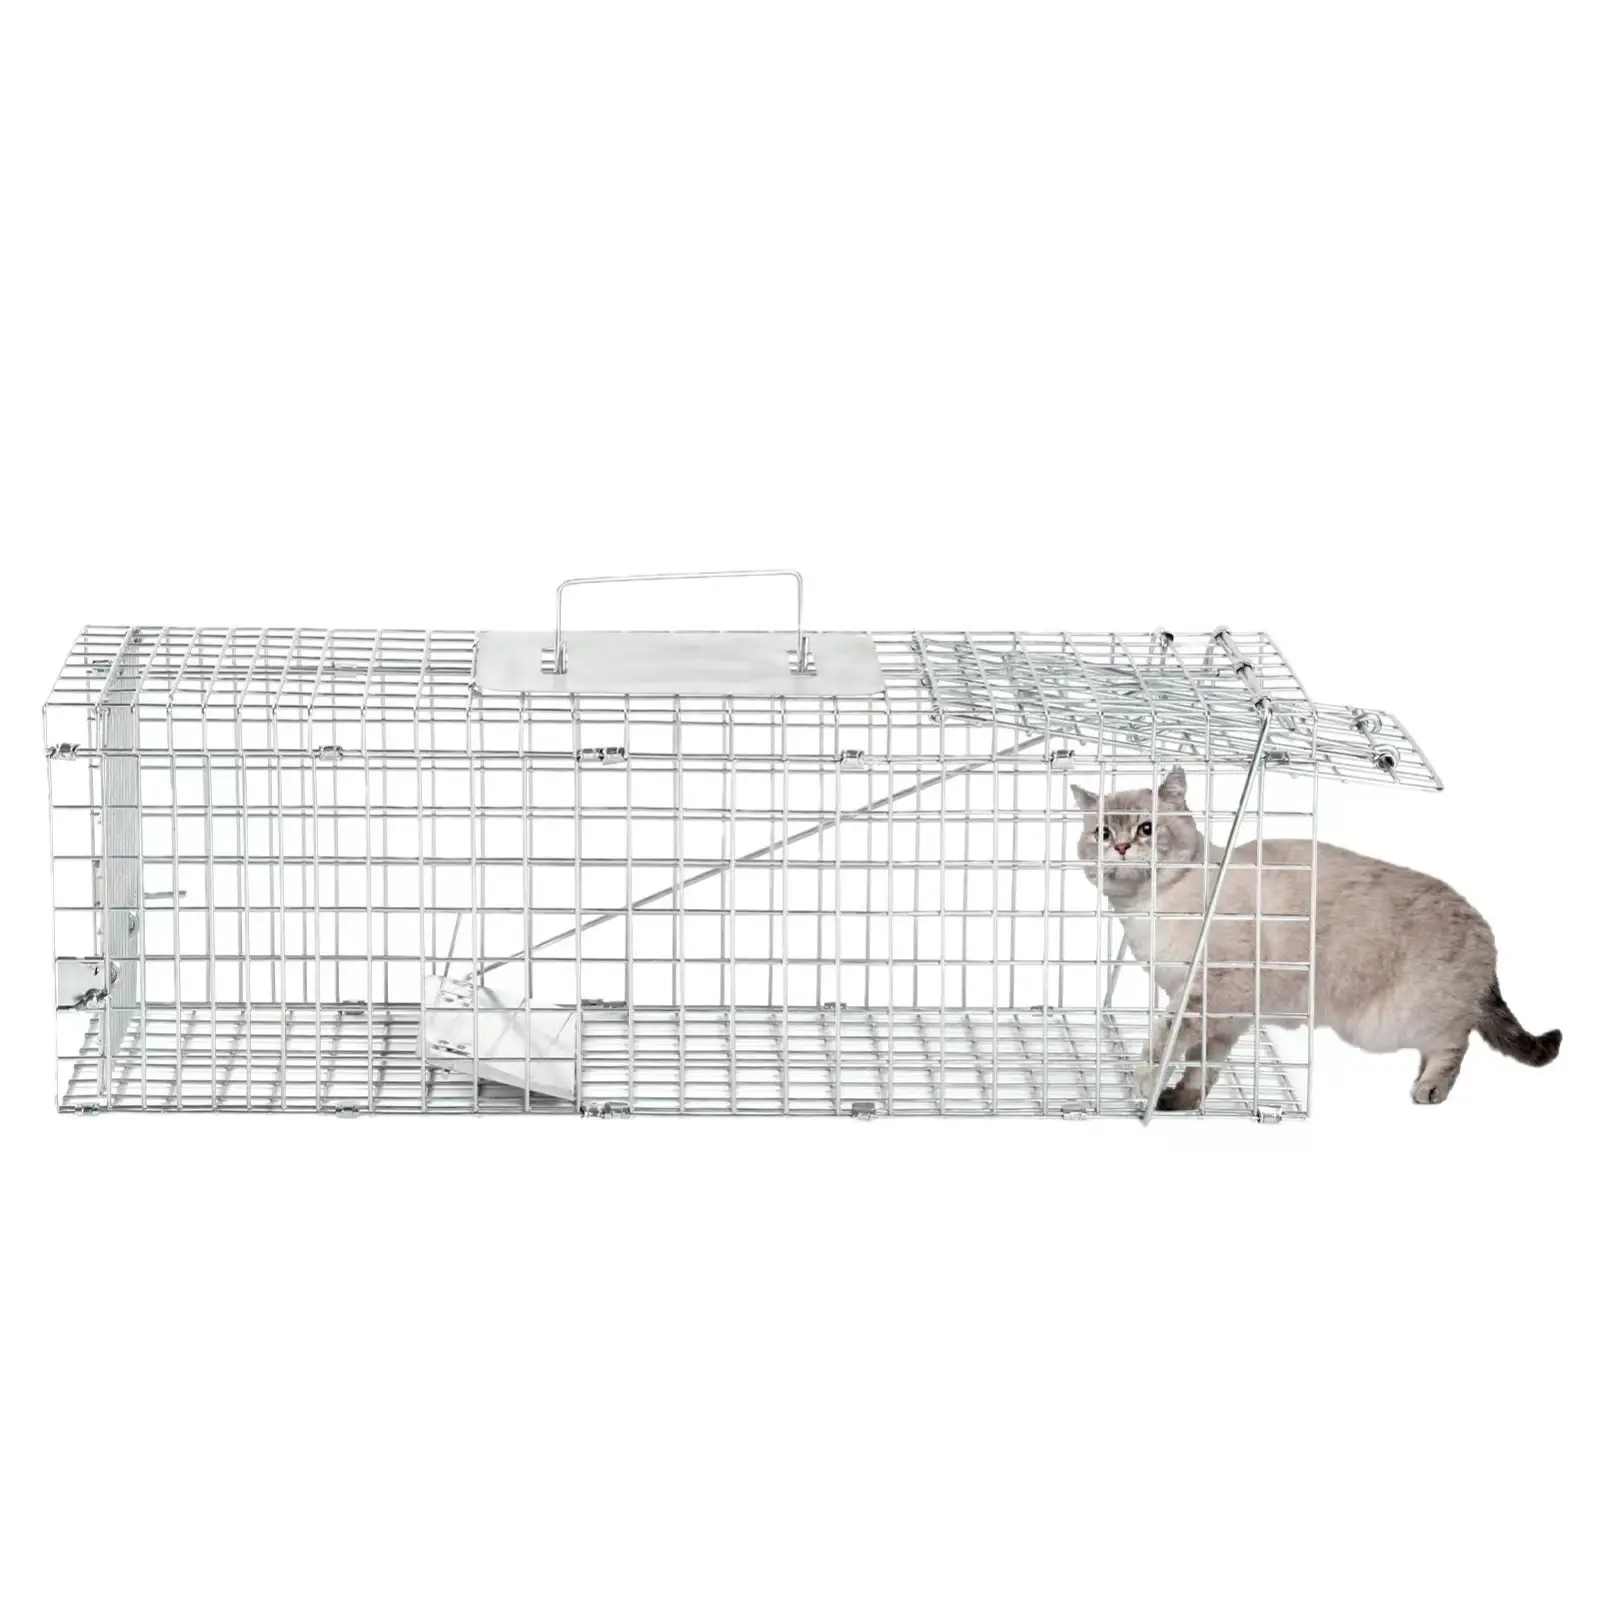 Hochwertiger Tierfällichkeitskäfig lebendige wilde Tiere Kojote Eichhörnchen Kaninchen Waschbären Katzenkäfig Fallen wilde Hunde Fallkäfige zu verkaufen